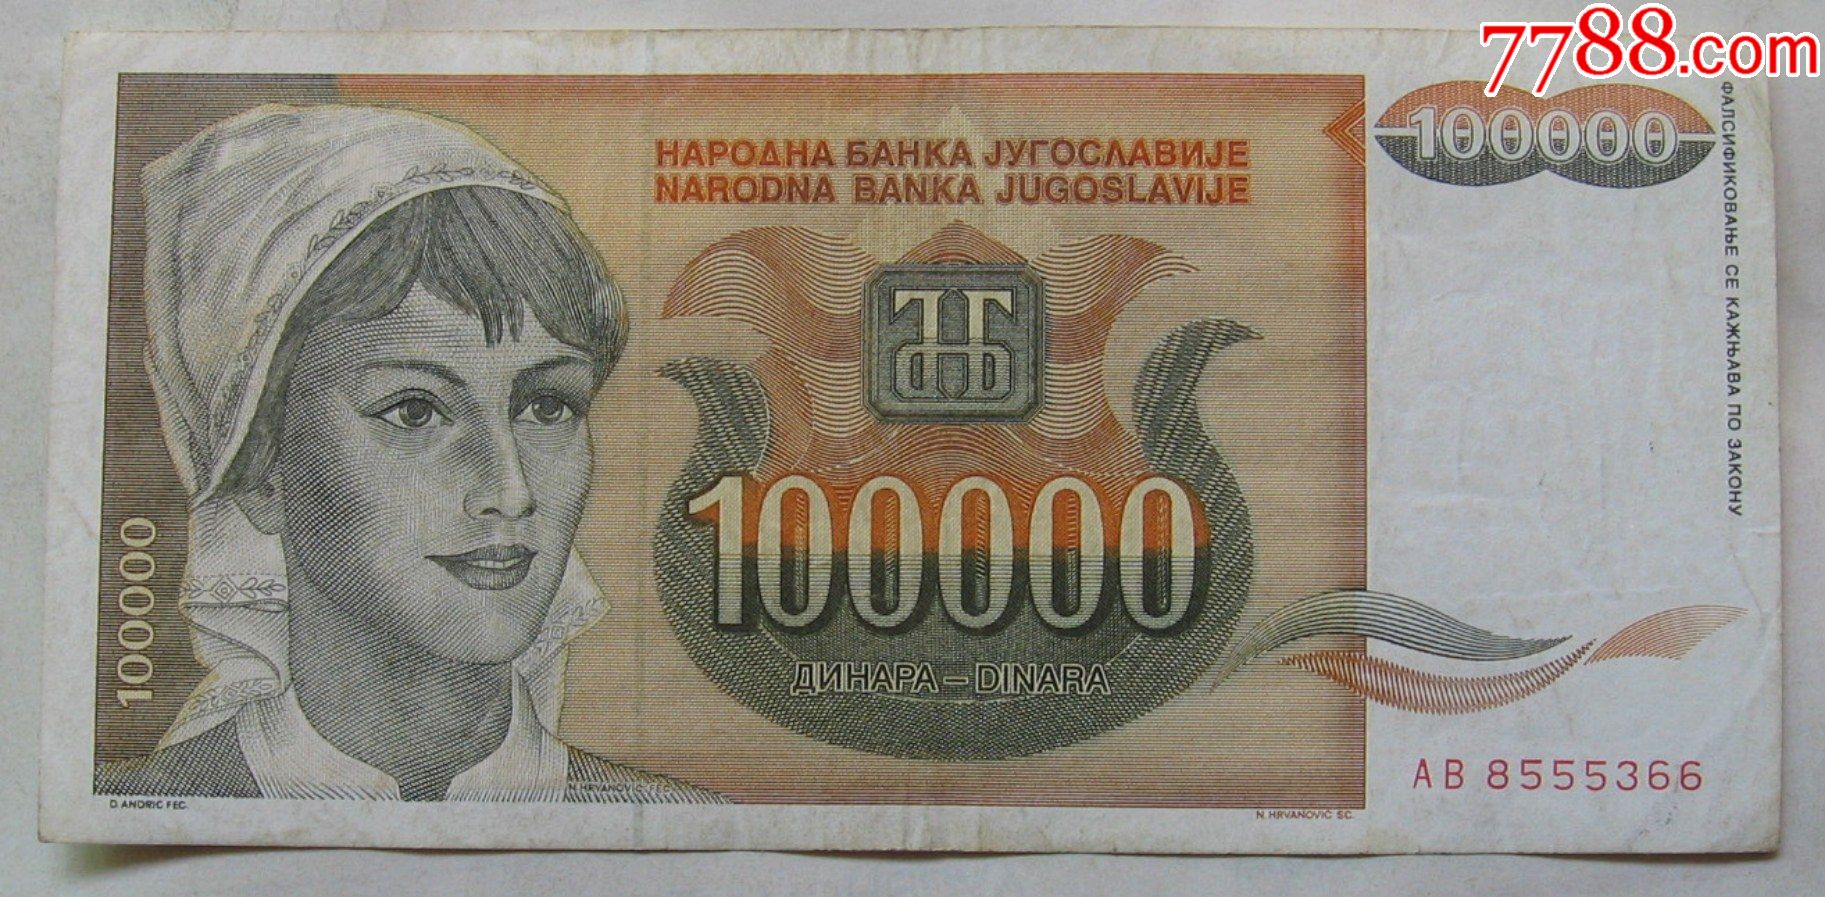 1993年南斯拉夫纸币100000第纳尔